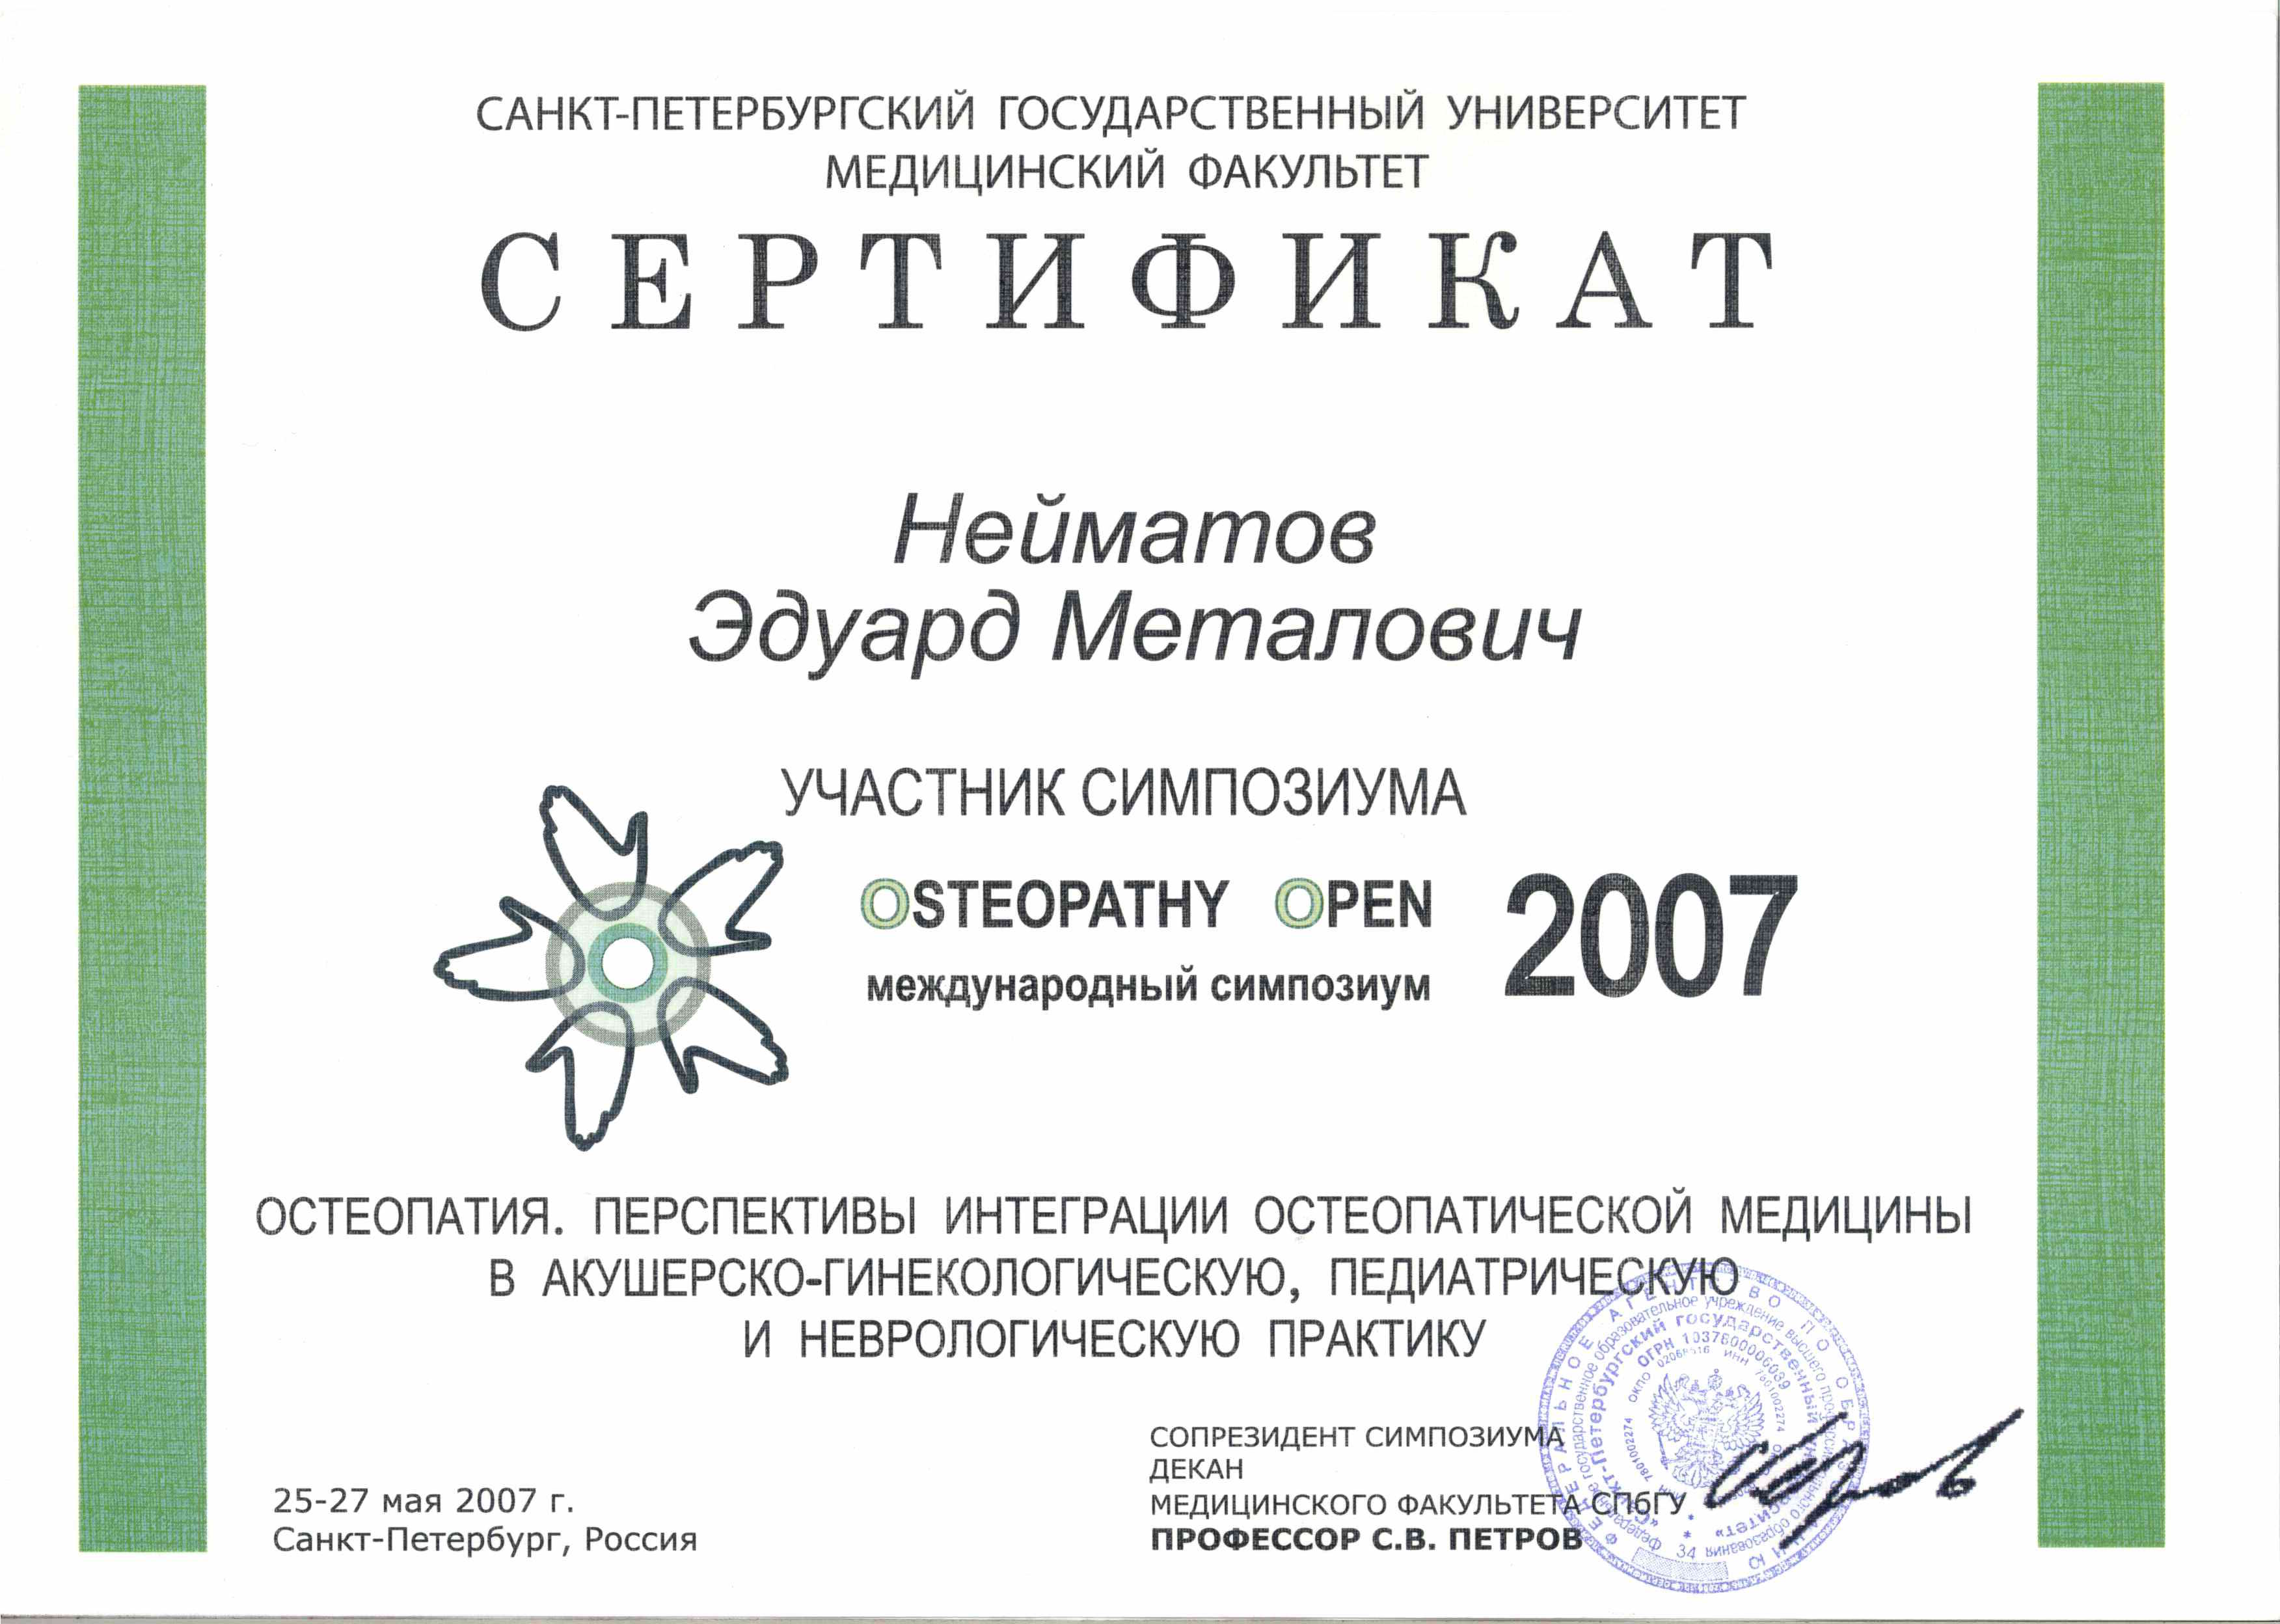 <p>Сертификат - международный симпозиум OSTEOPATHY OPEN</p>